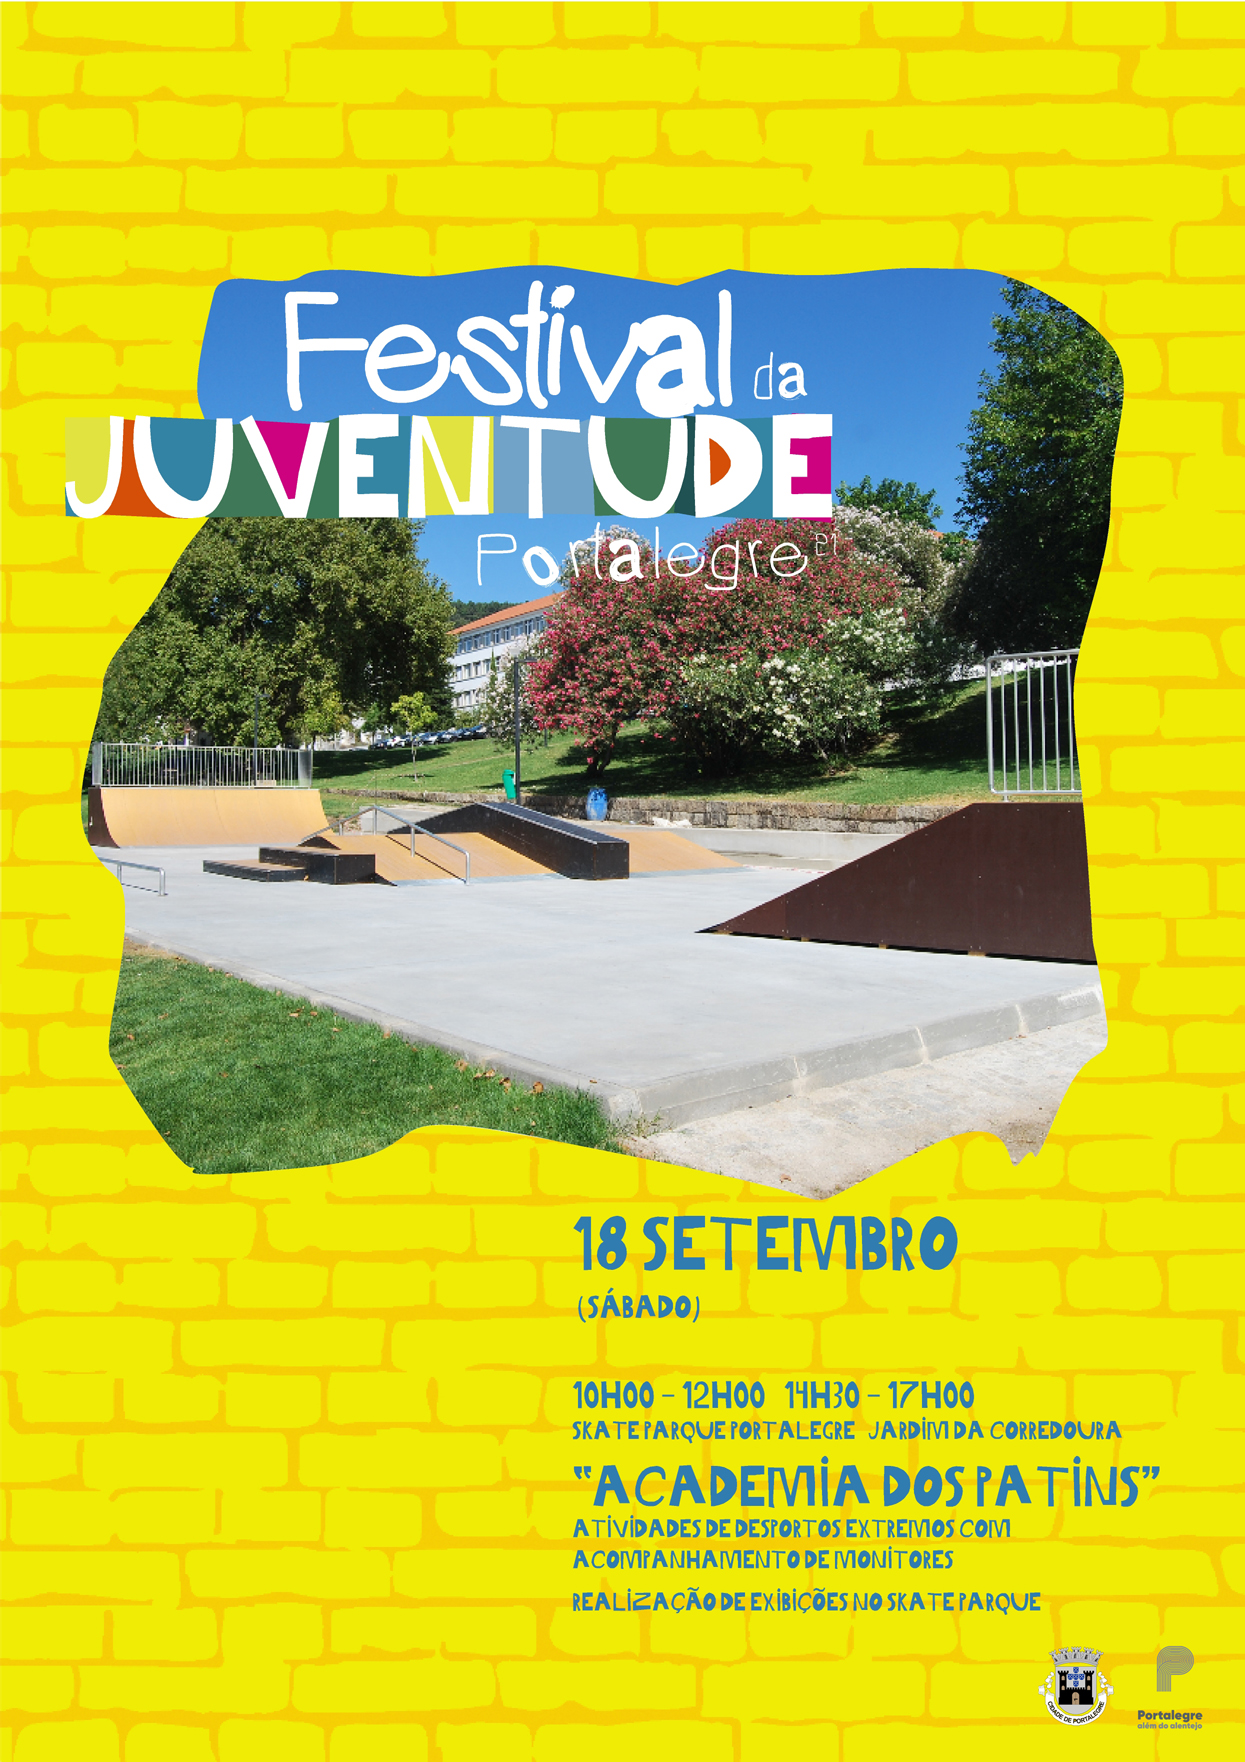 DestaqueSkateParque_FestivalJuventude2021